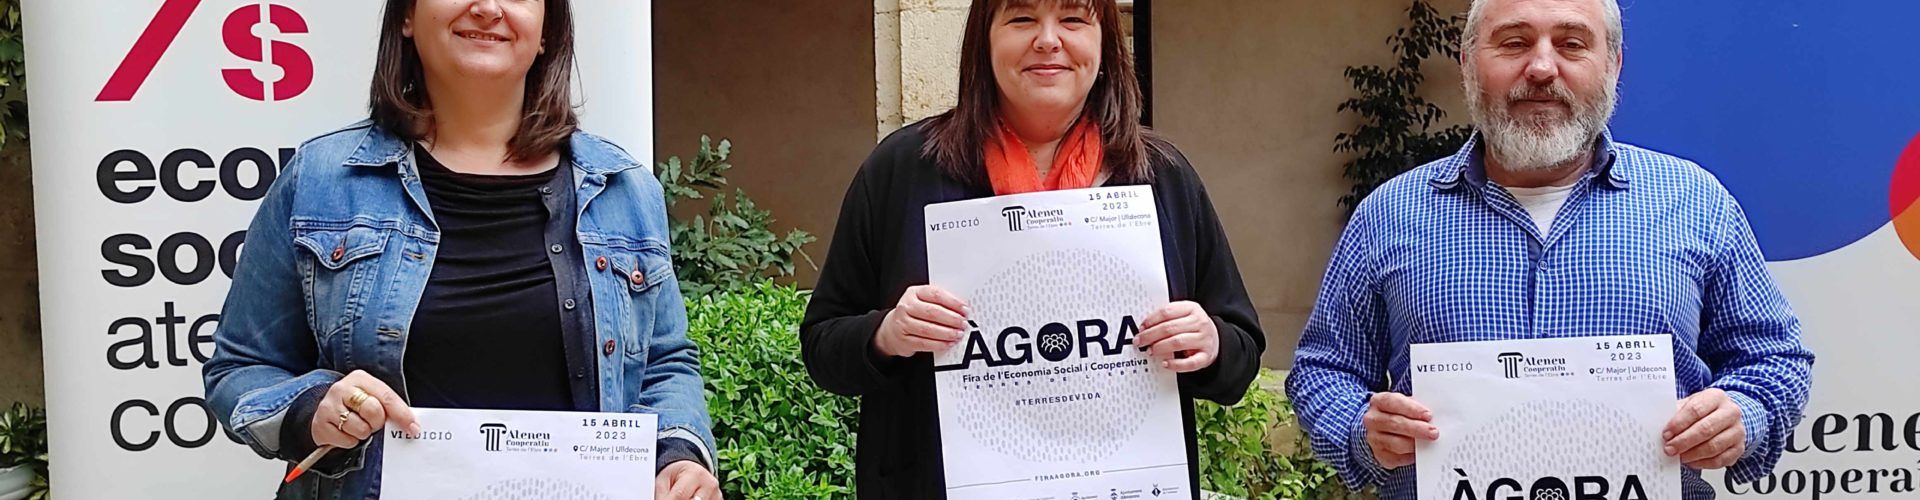 La Fira Àgora vol trencar a Ulldecona els estereotips que envolten el món rural ebrenc